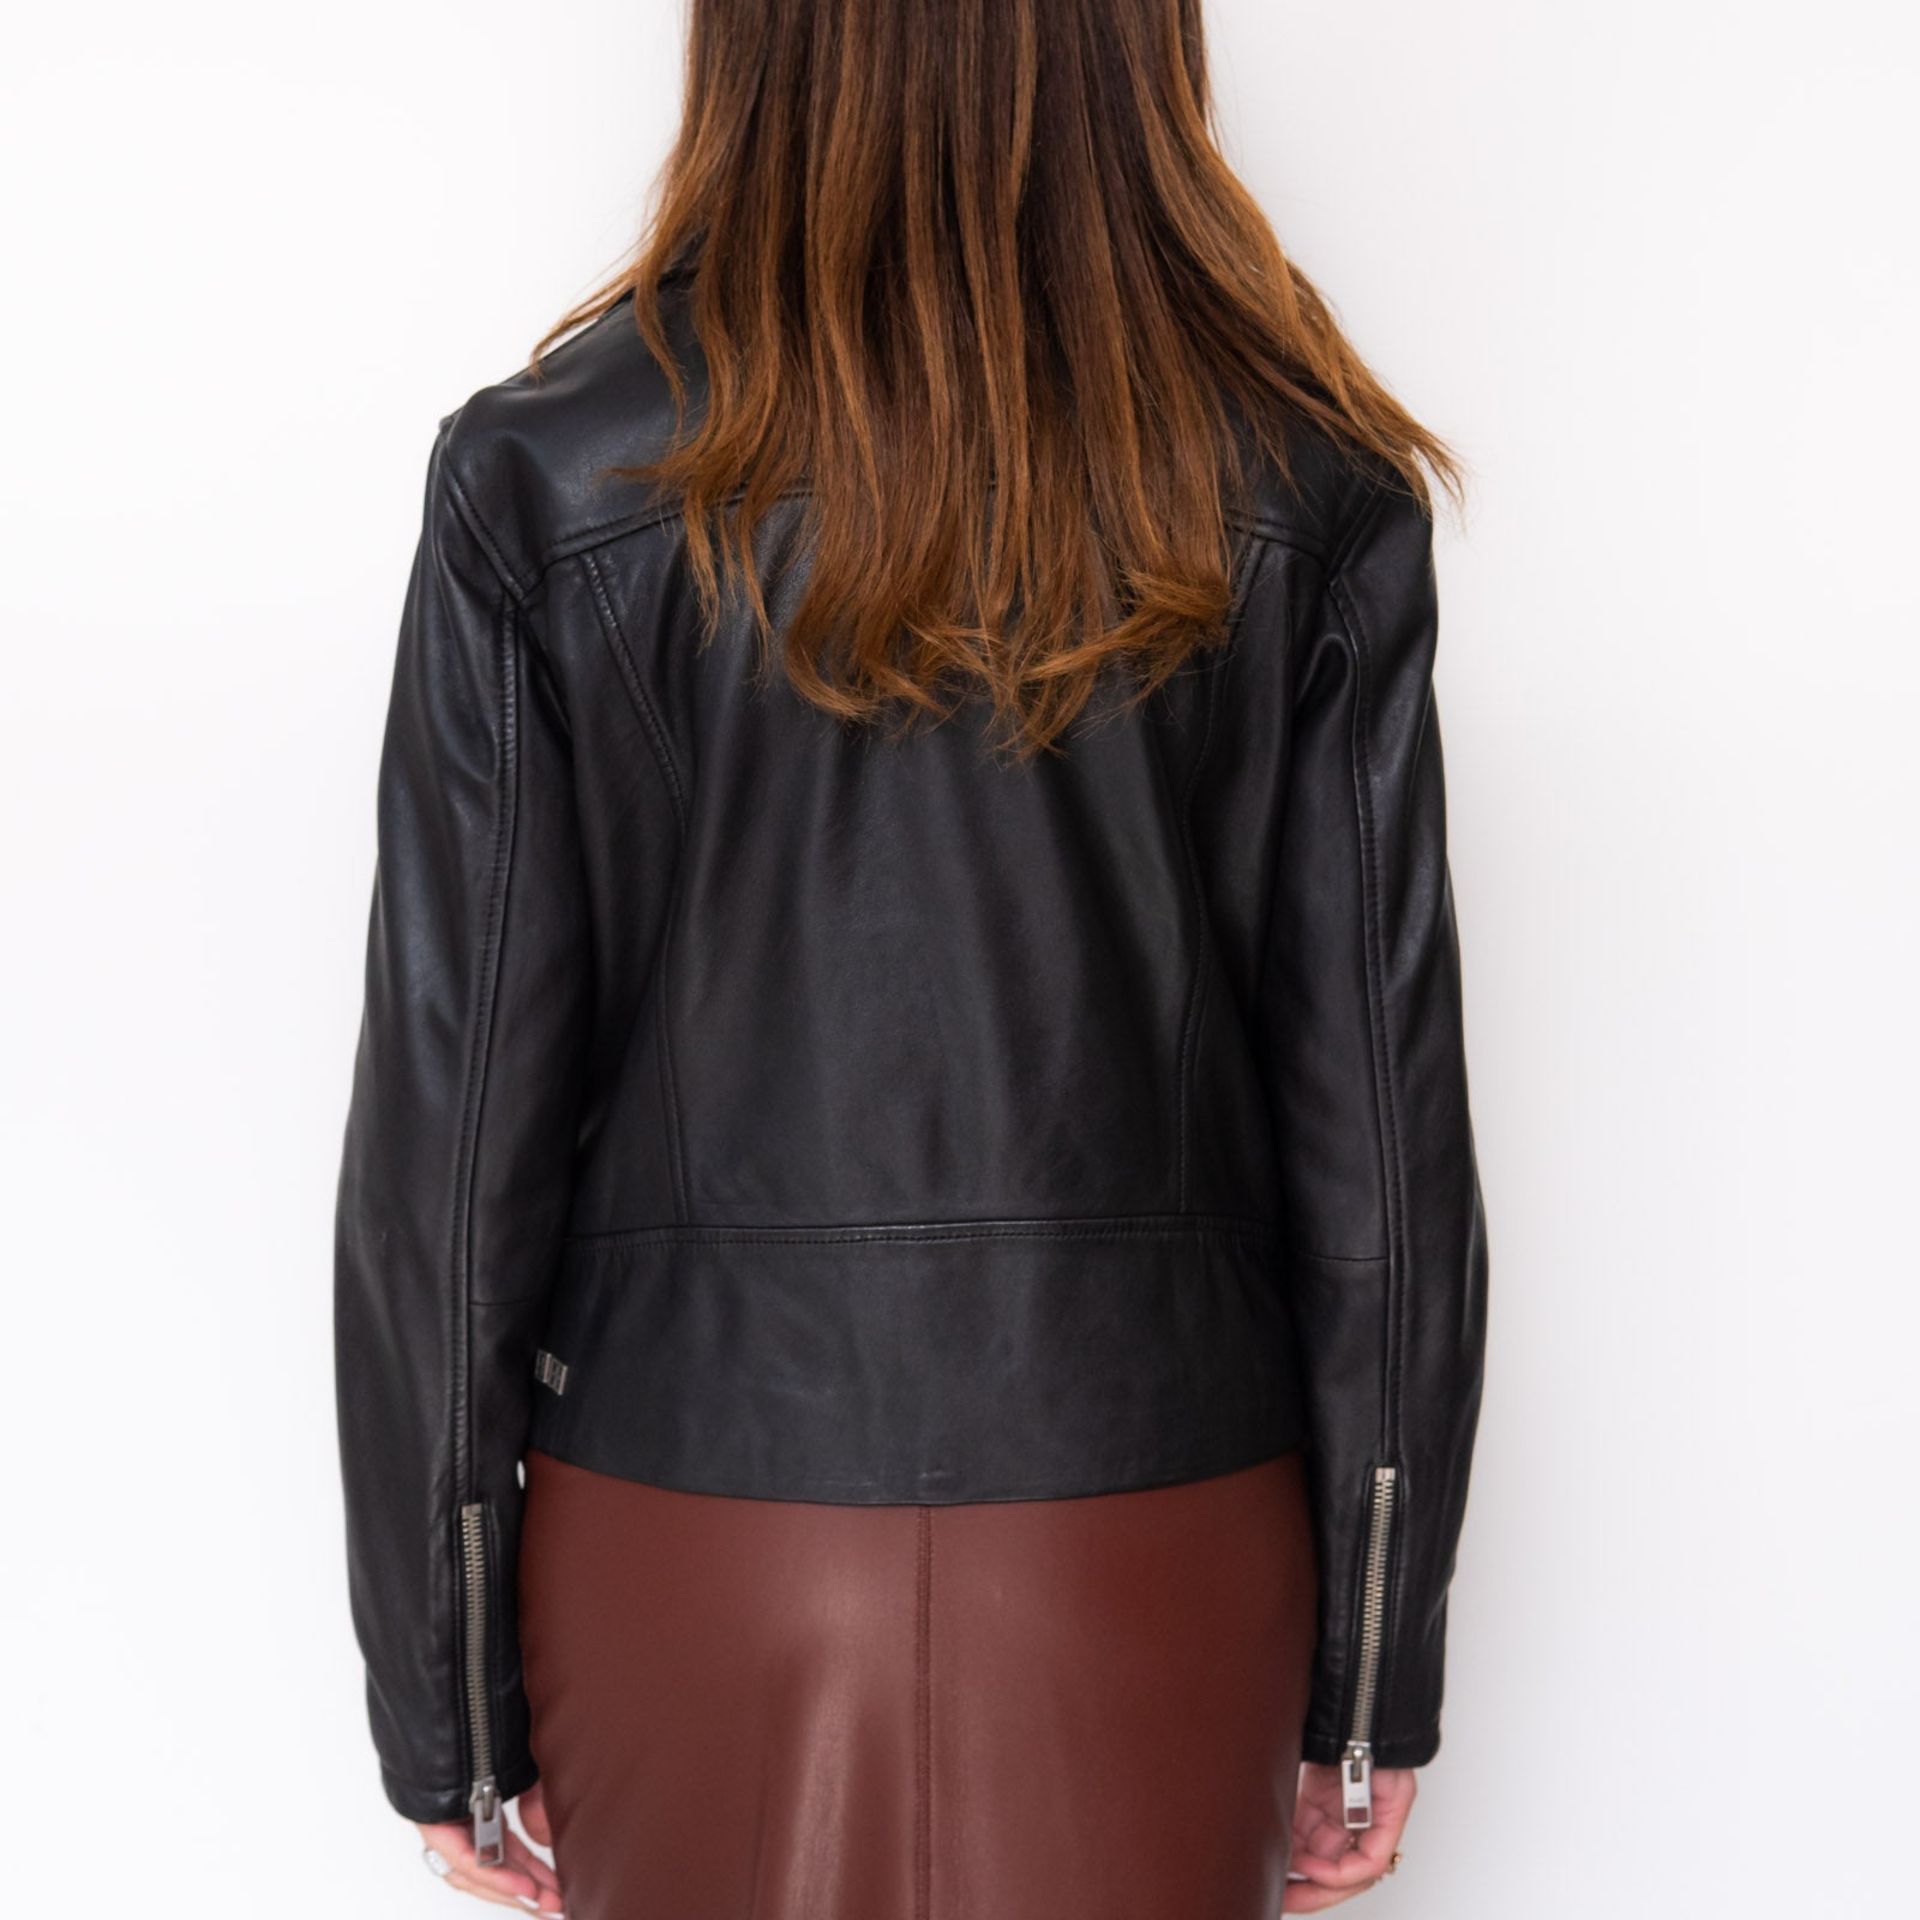 Ksubi Black Leather Biker Jacket Size Medium - Image 4 of 6